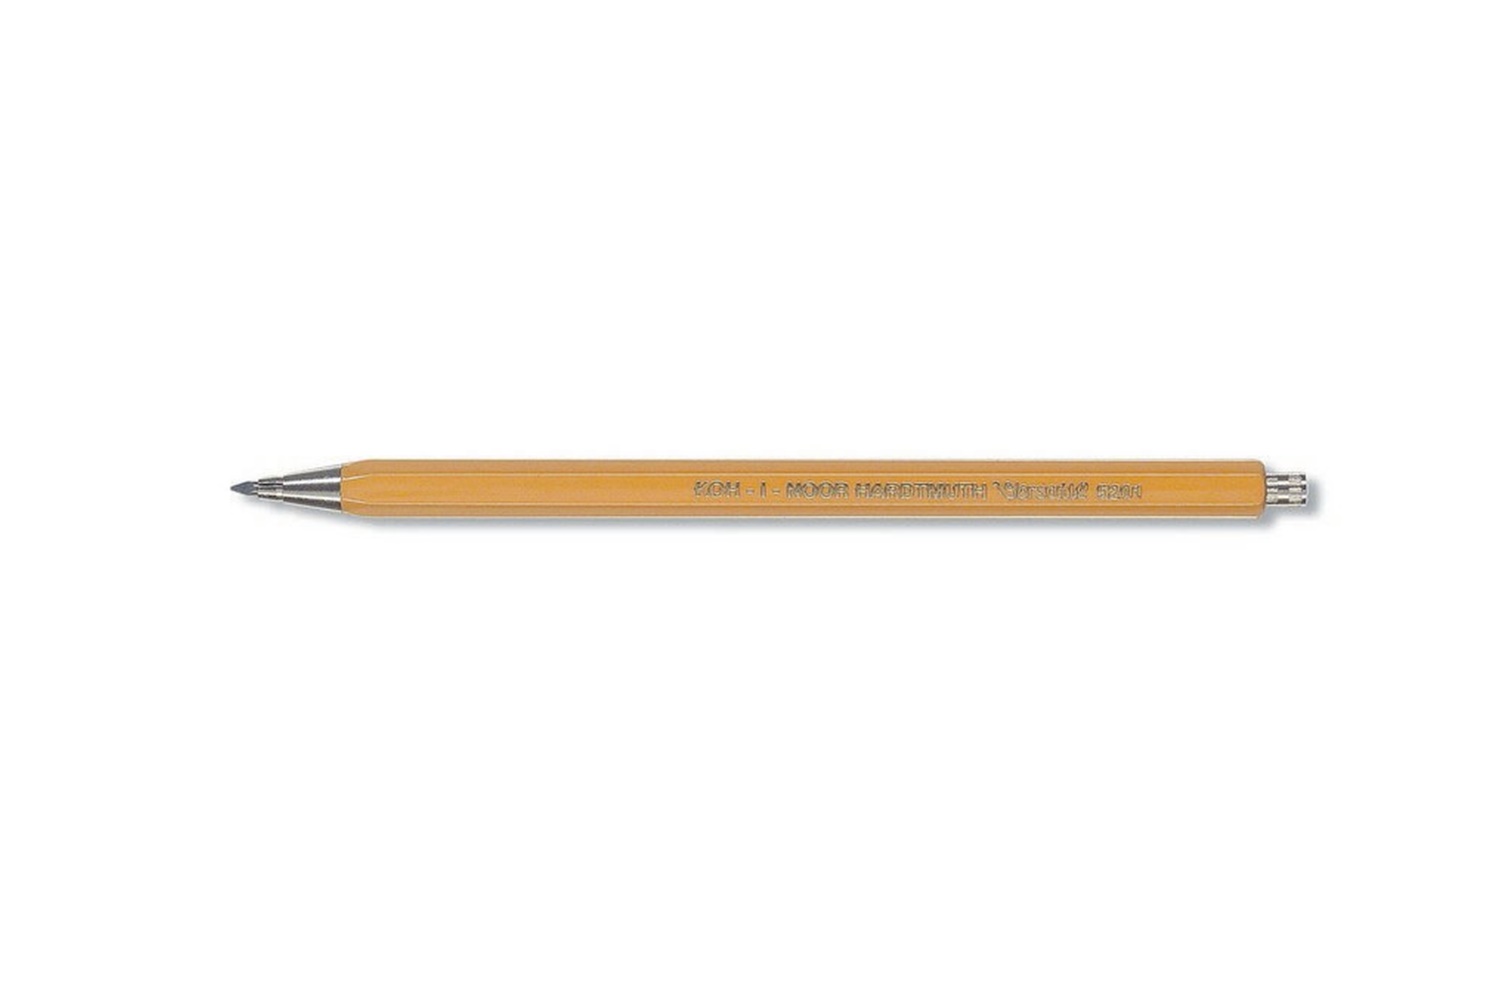 2stk Fallminenstift Druckbleistift Bleistift 2 mm Süßigkeit Farben 2018 